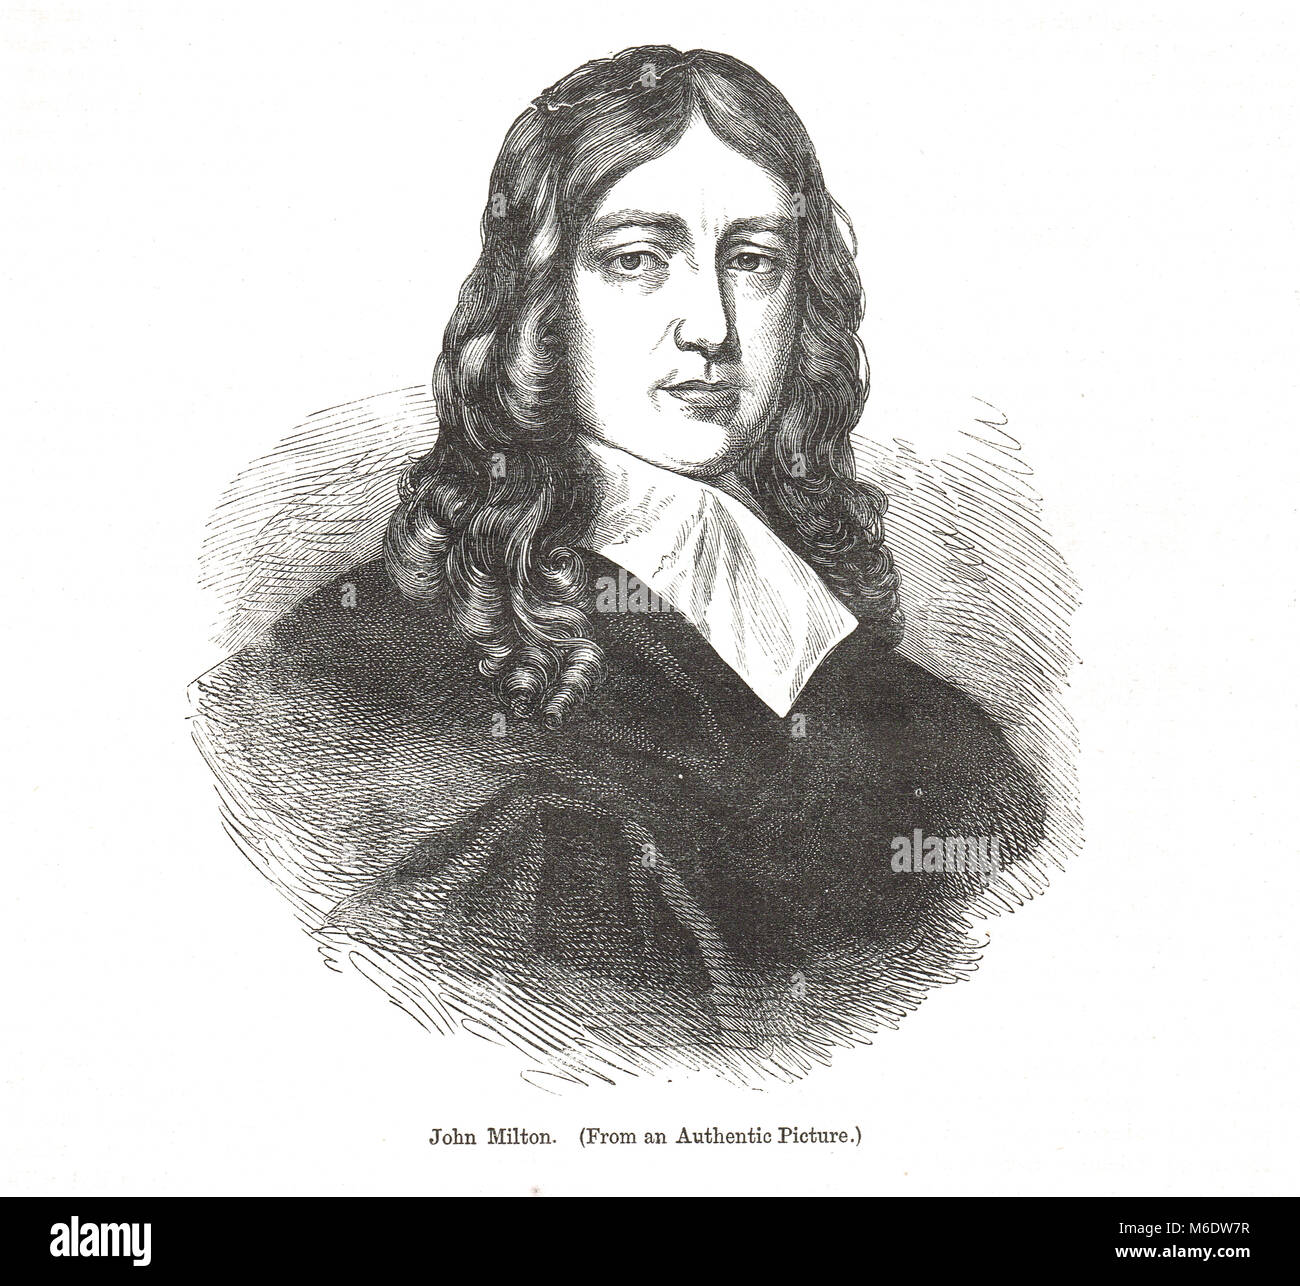 John Milton, 1608 - 1674, englischer Dichter, Polemiker, Literat, Beamter für den Commonwealth von Cromwell, und Verfasser des epischen Gedicht Paradise Lost Stockfoto